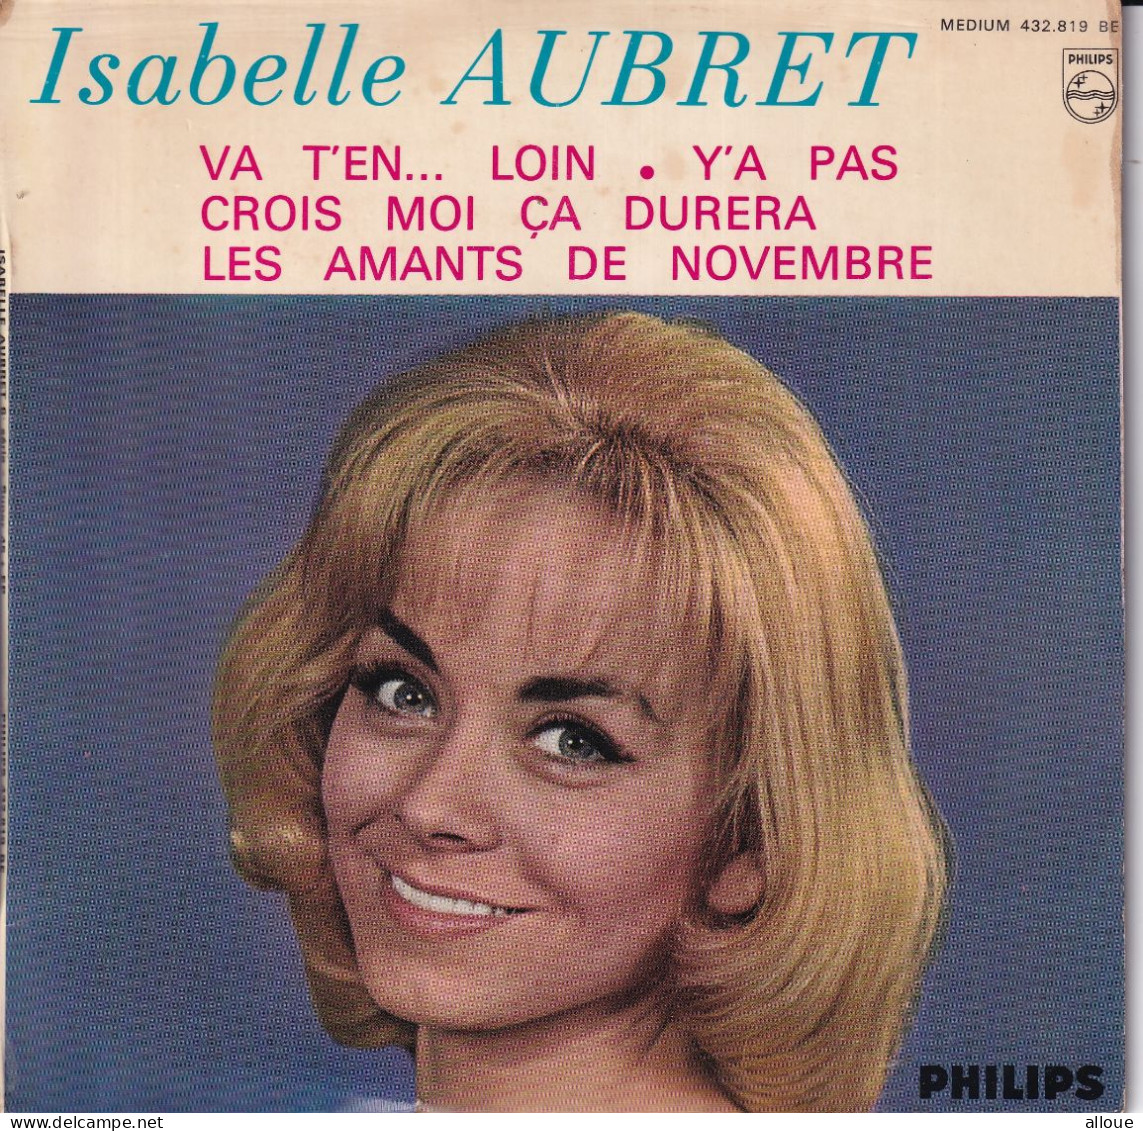 ISABELLE AUBRET - FR EP - VA T'EN... LOIN + 3 - Andere - Franstalig